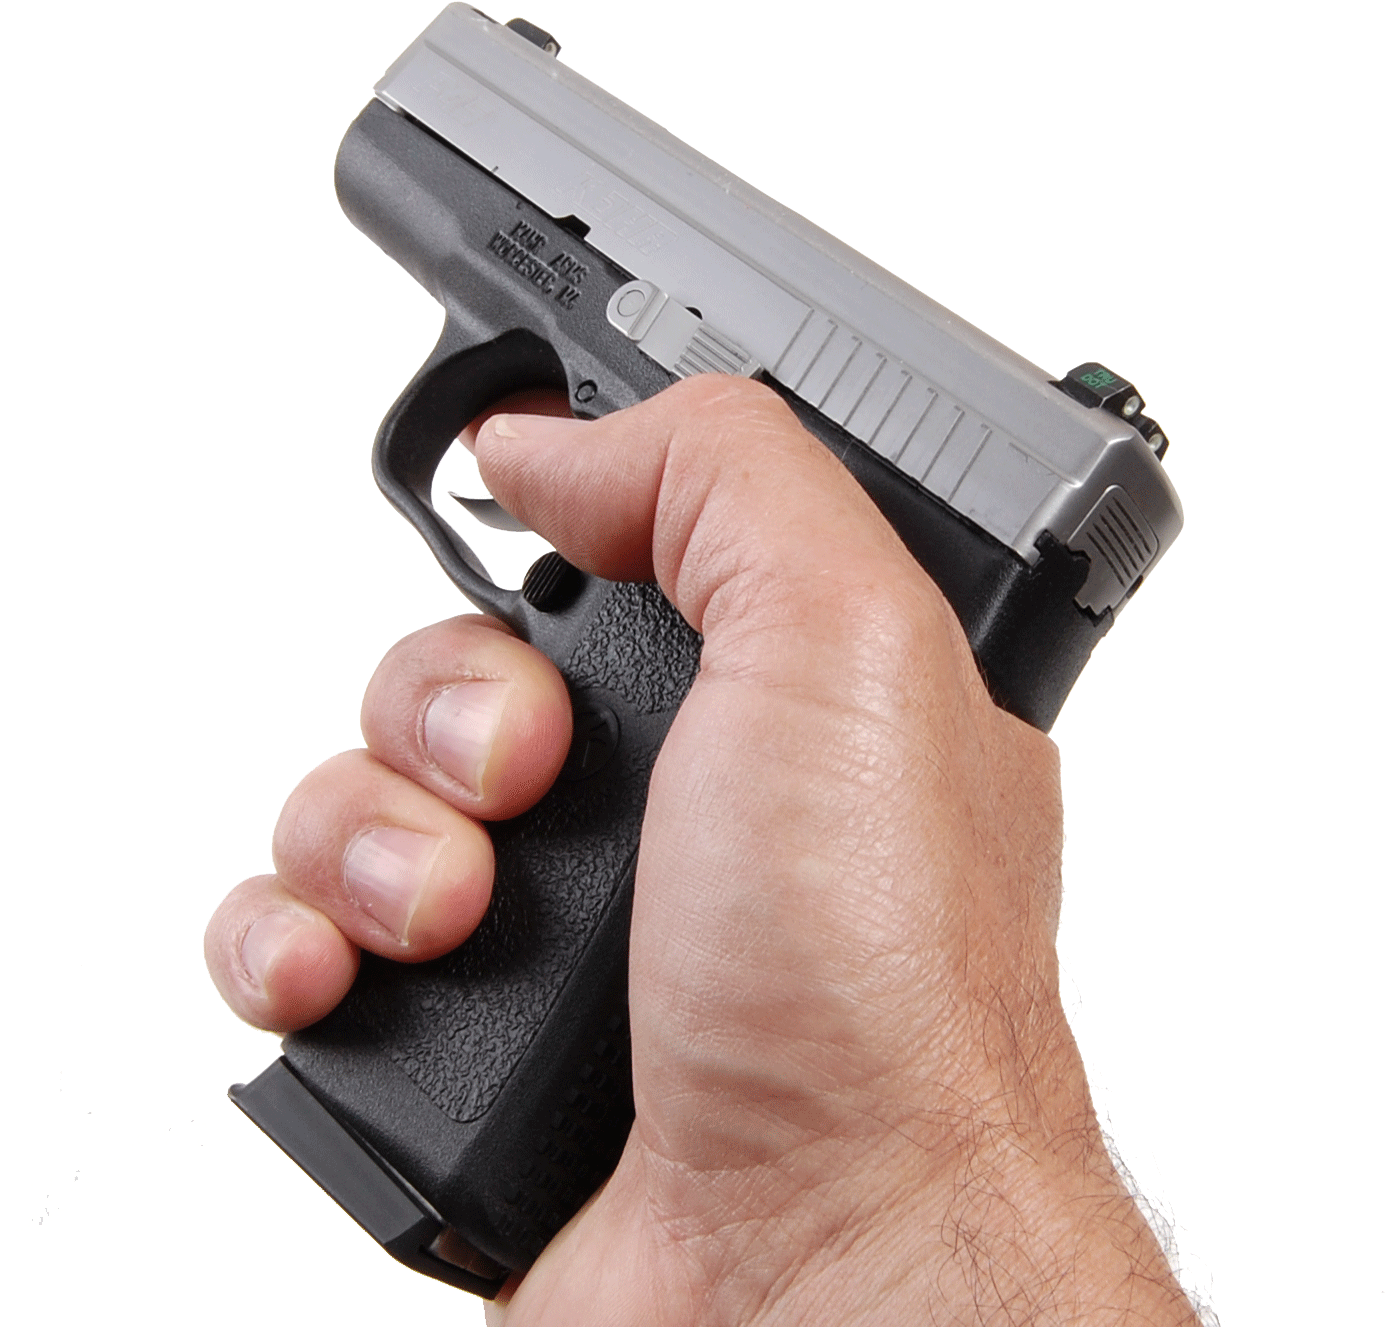 Handgun Transparent Arm Holding Picture Transparent Clipart (1385x1327), Png Download